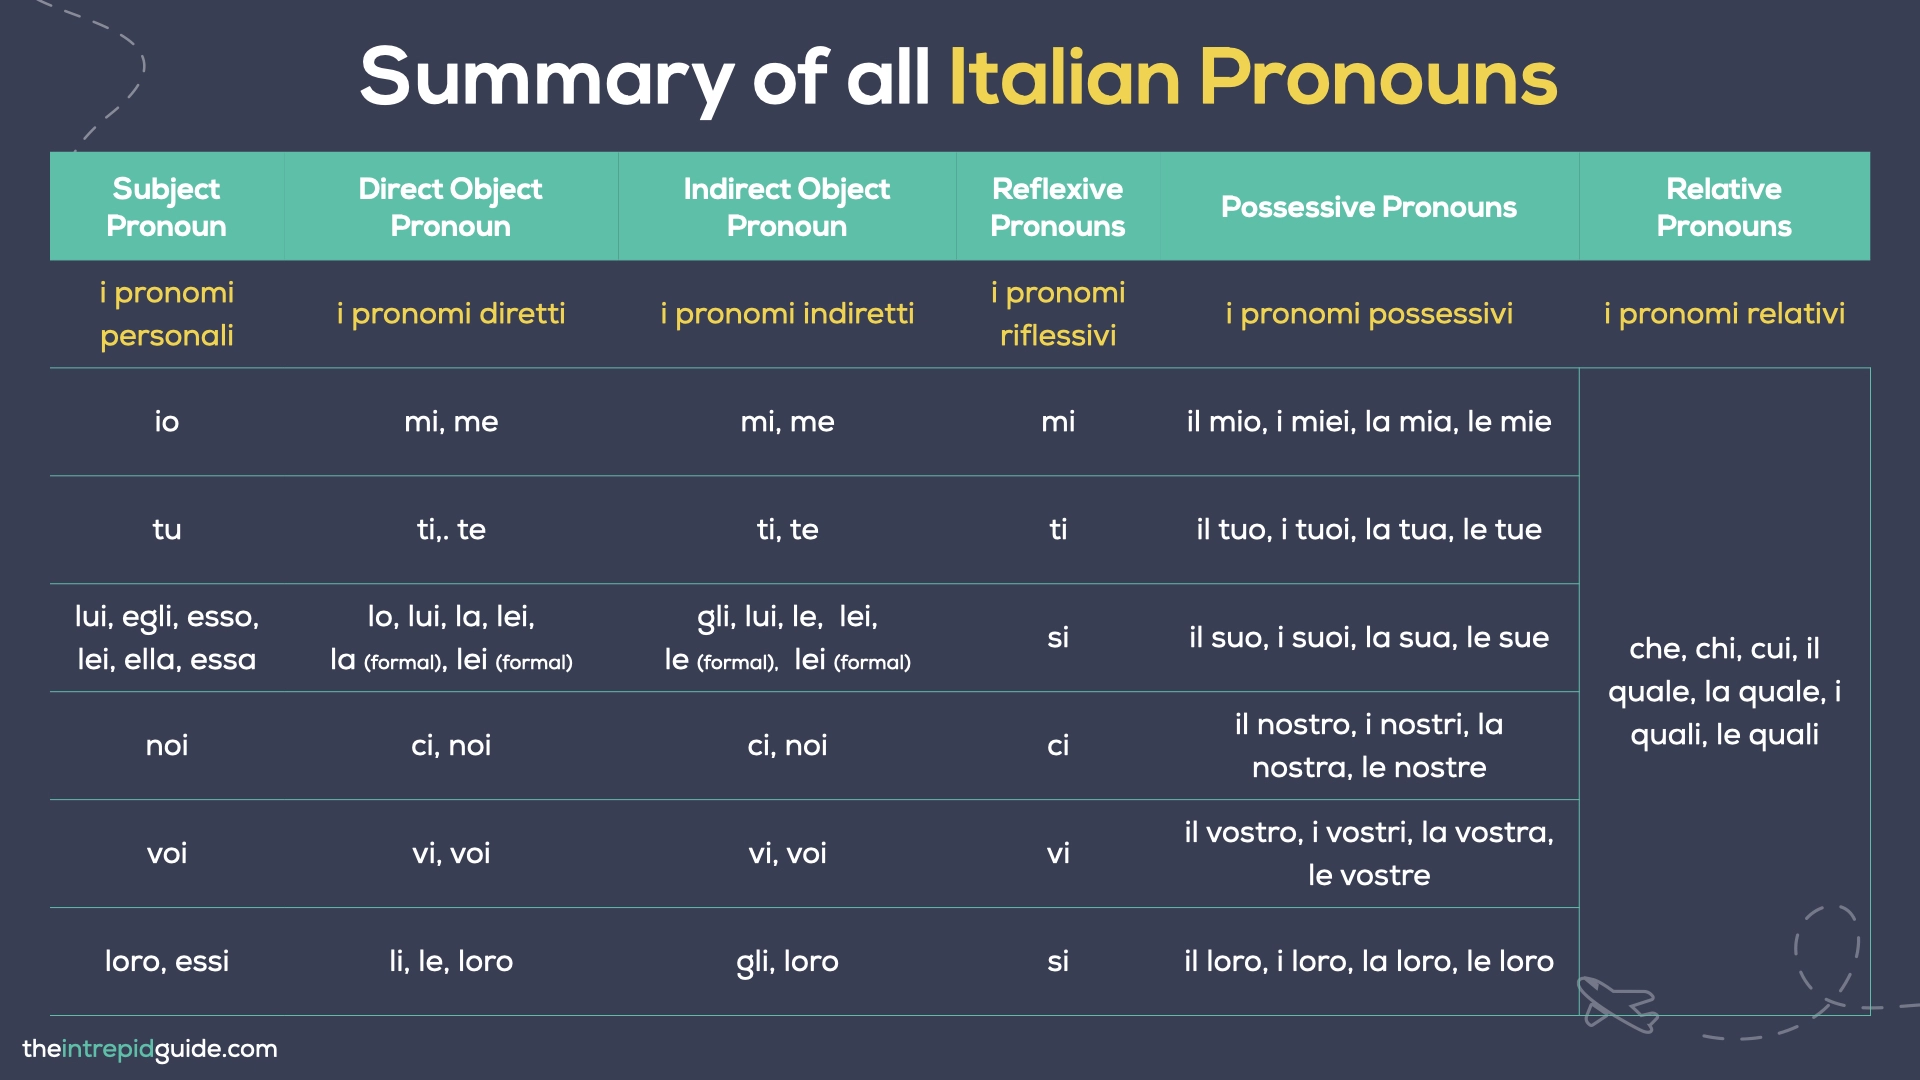 Italian Pronouns Chart - Summary of all Italian Pronouns